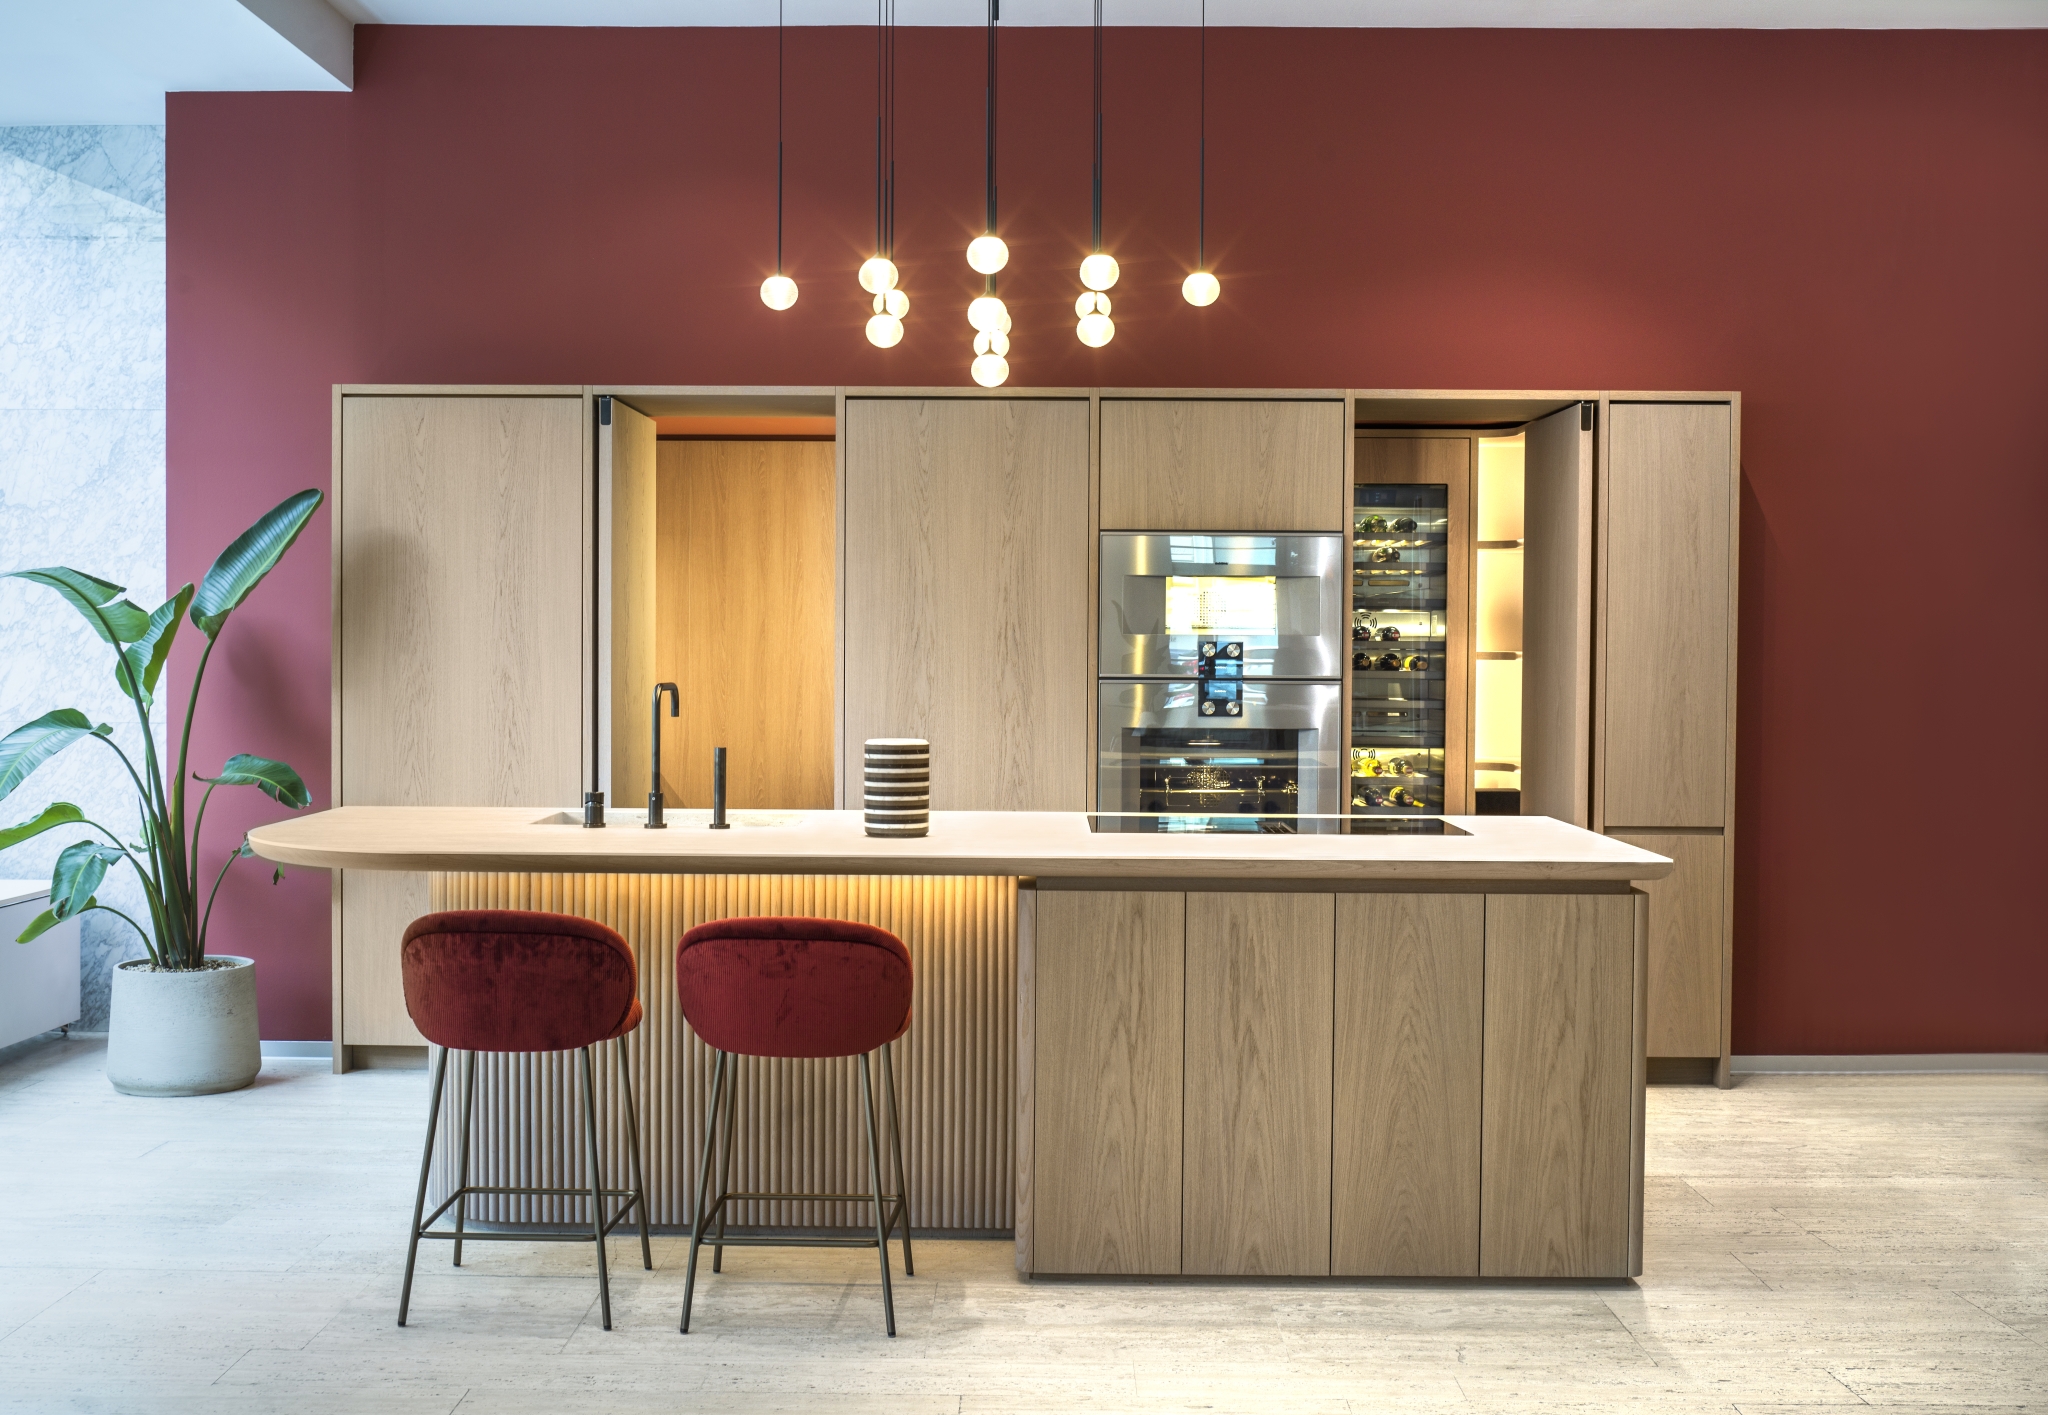 Modernes Kücheninterieur mit eleganter Holzoberfläche, einer Insel mit trendigen Barhockern und einer leuchtend burgunderroten Akzentwand, ergänzt durch stilvolle Hängelampen.